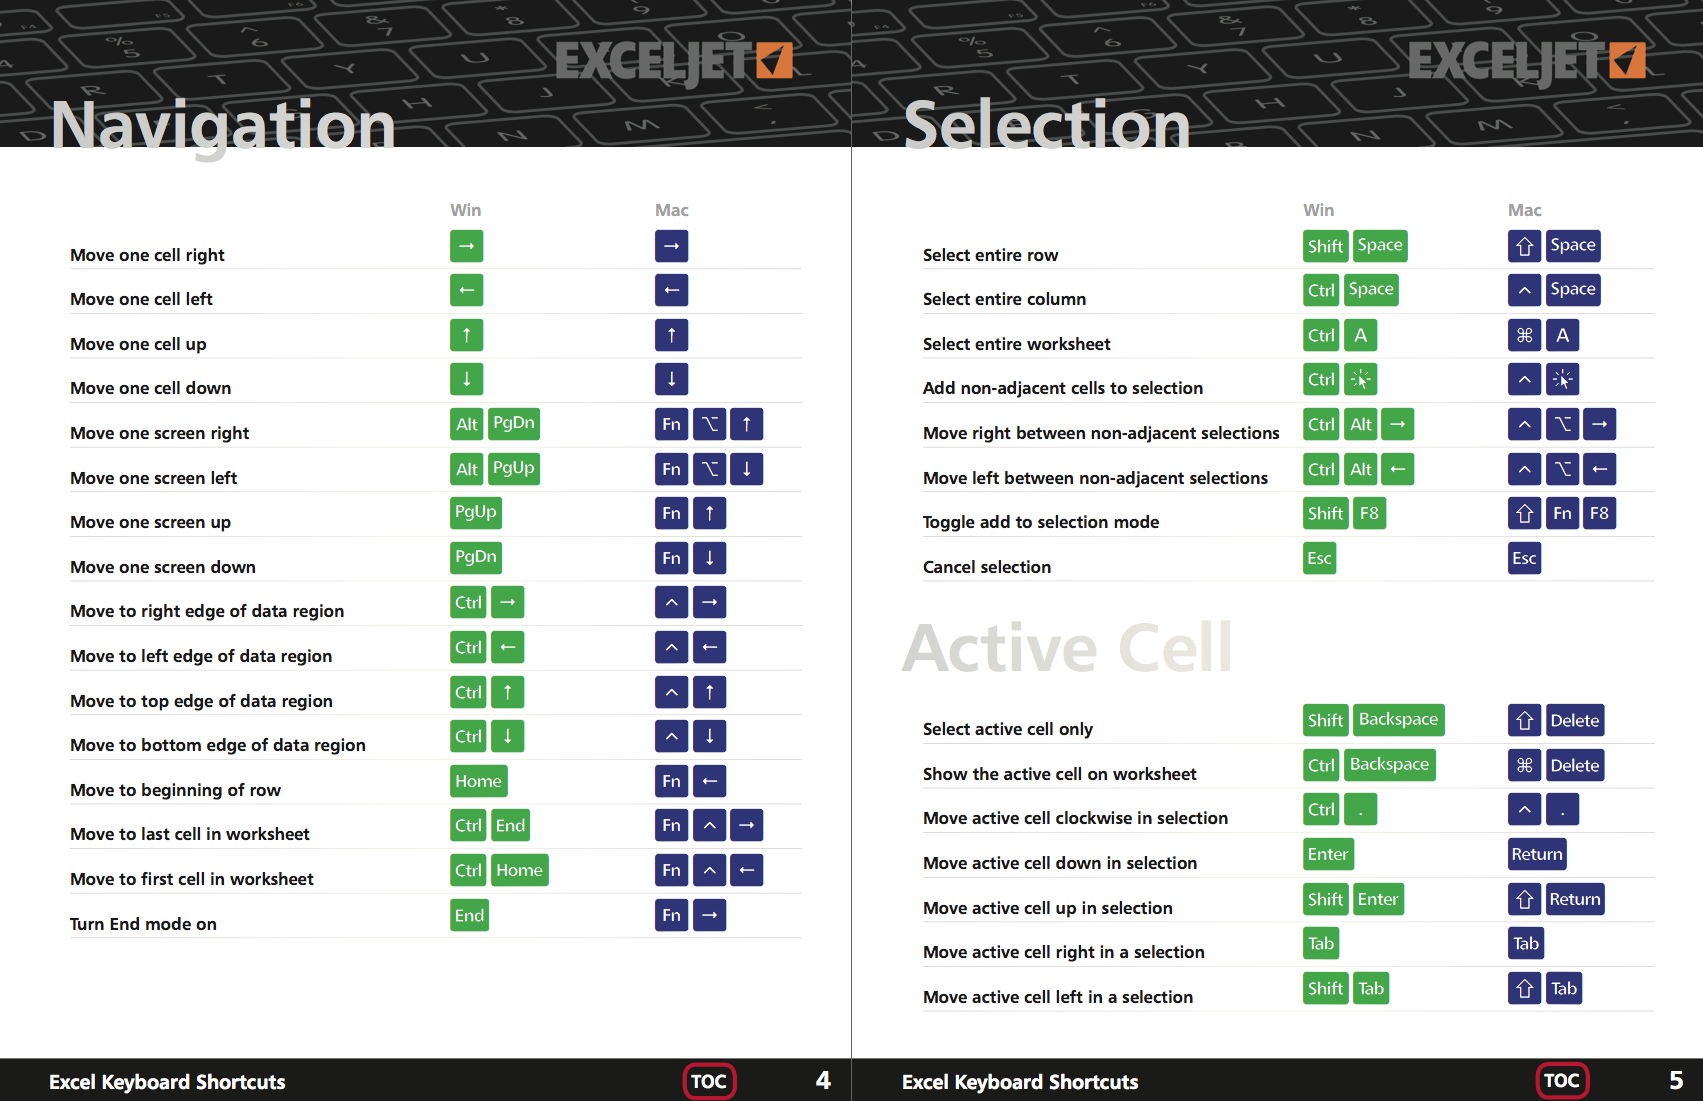 Exceljet's Excel Shortcut Book